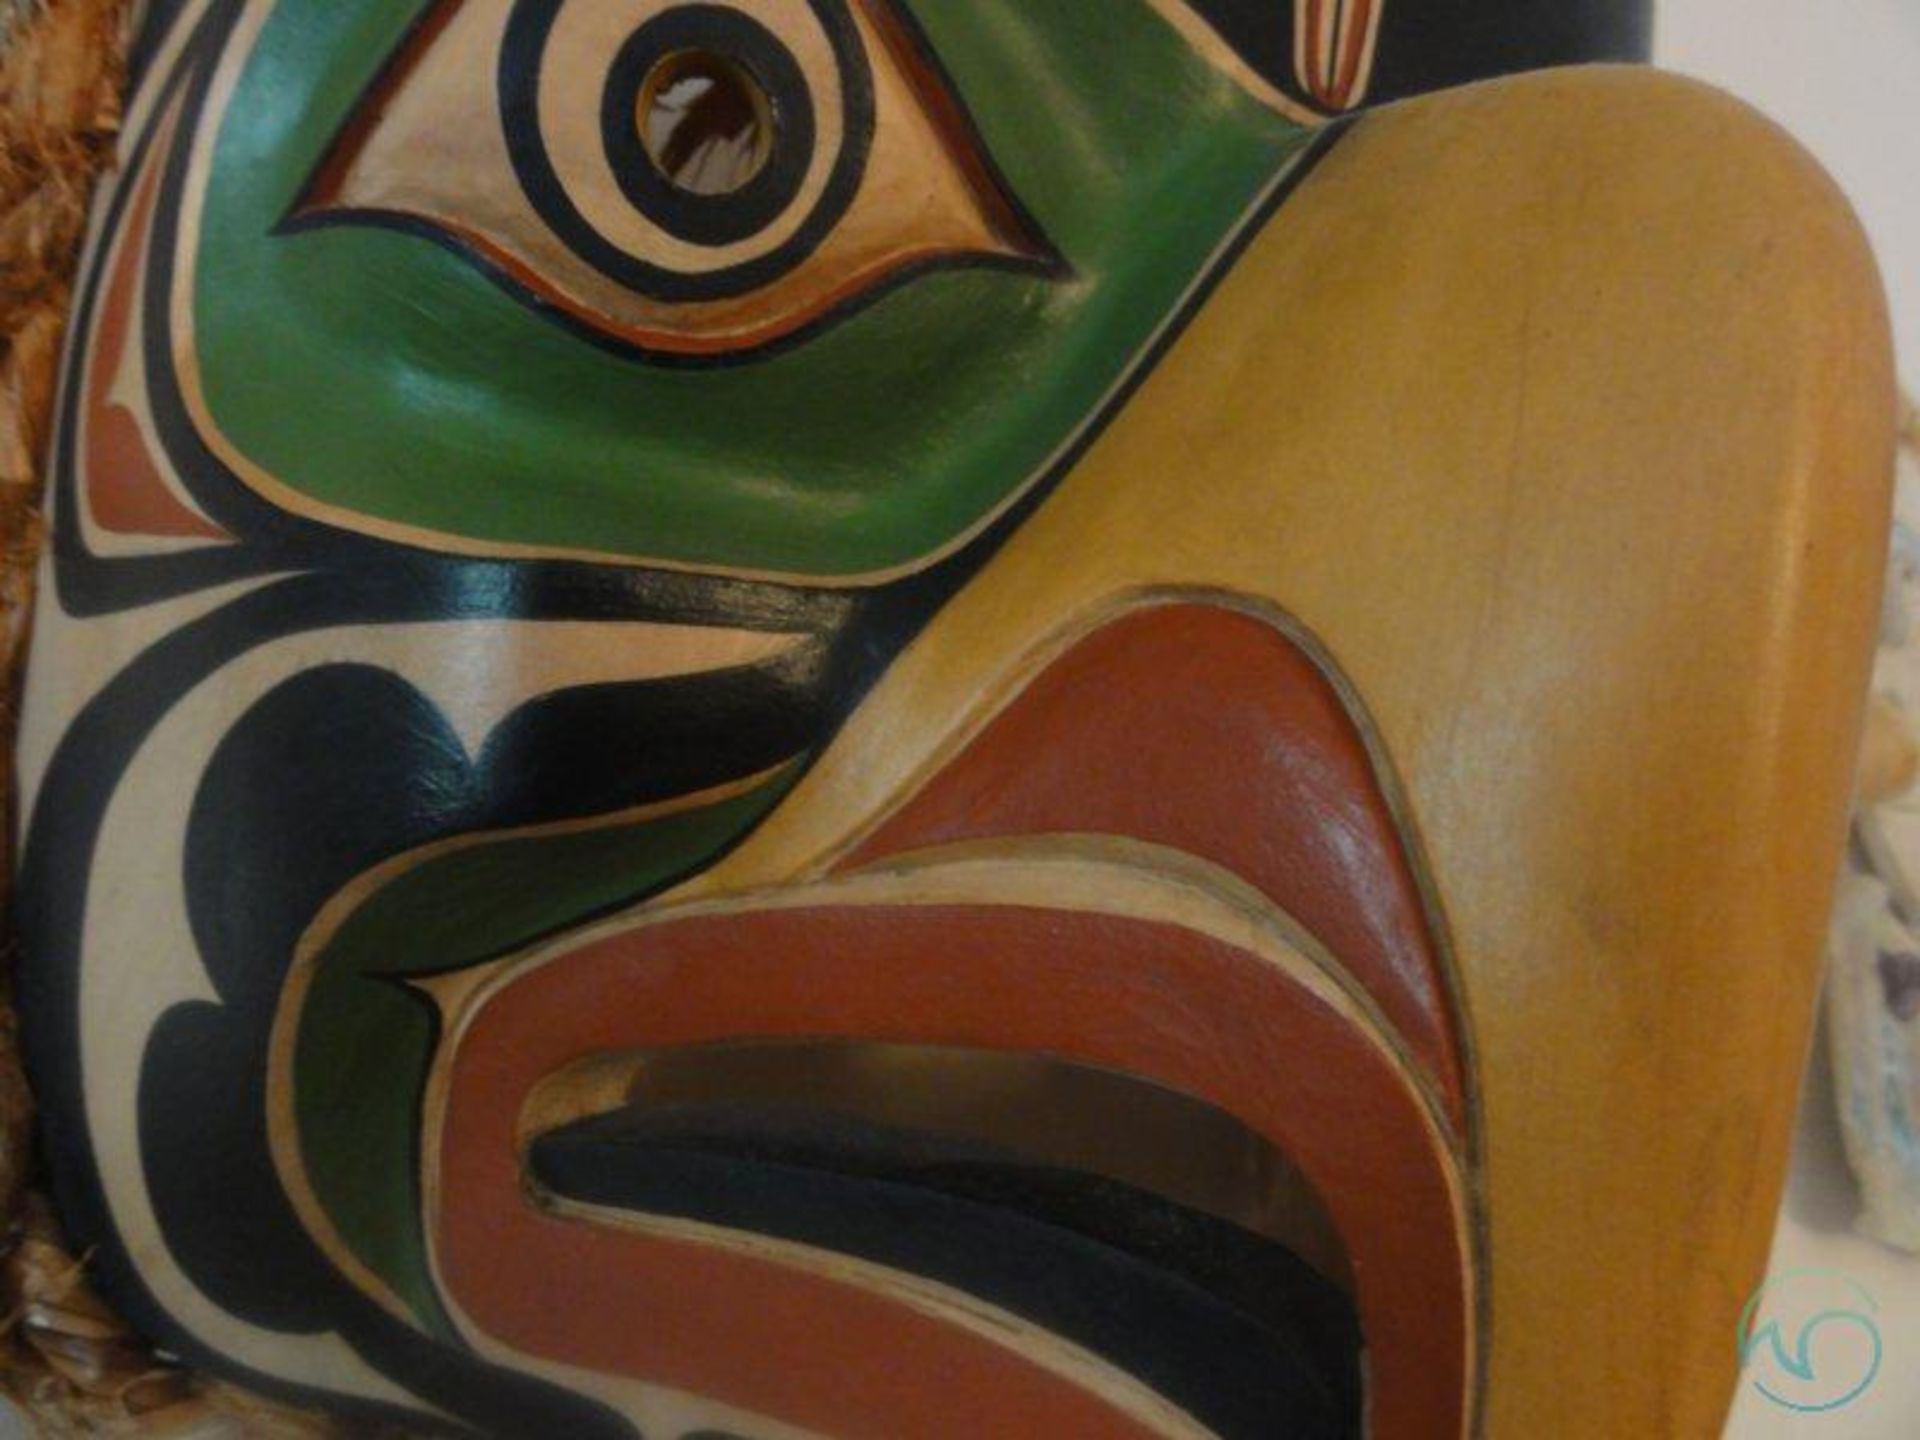 Northwest Indian signed mask - Image 4 of 5